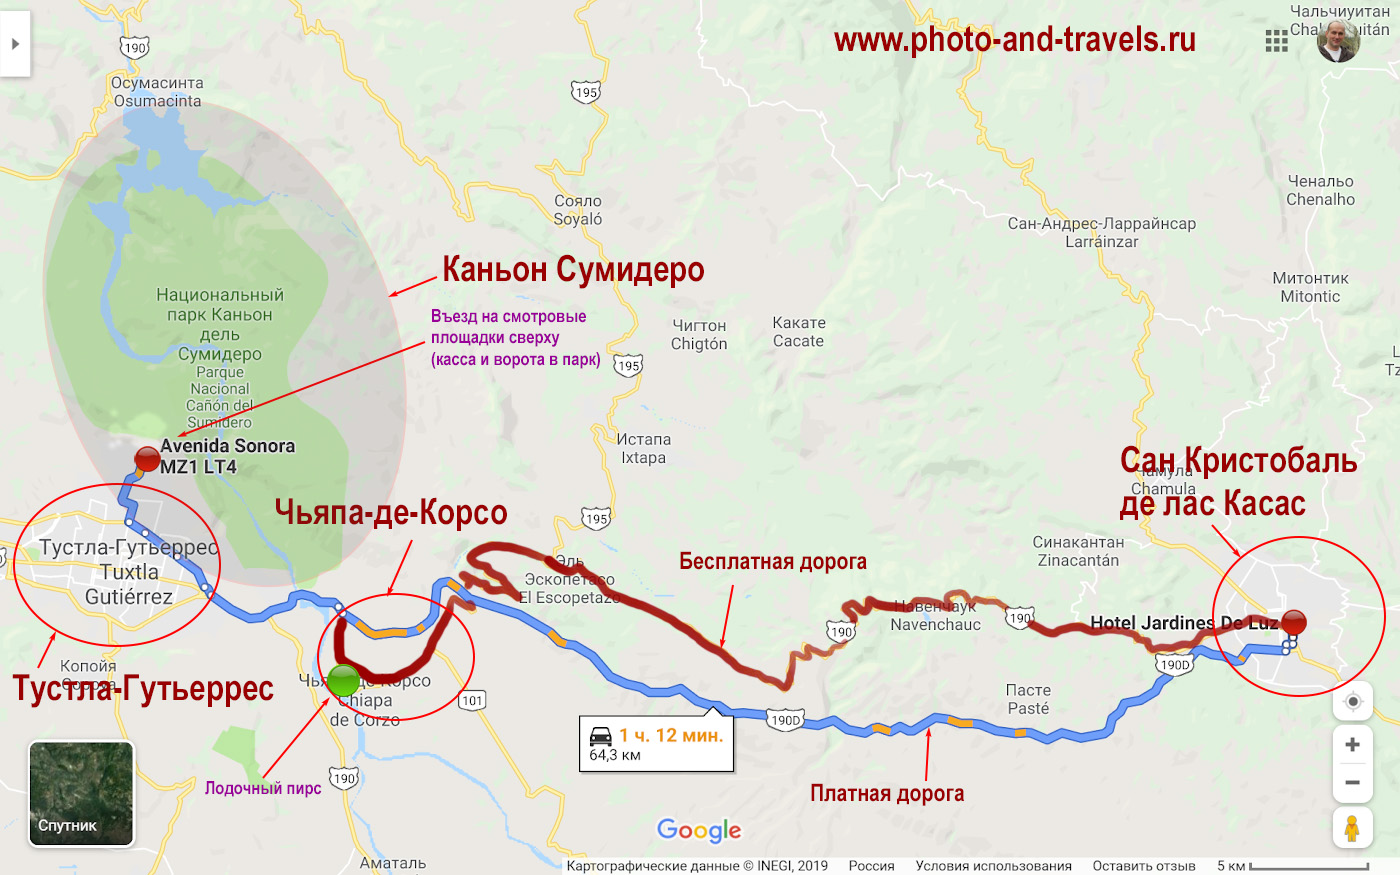 2. Карта со схемой бесплатной (красная линия) трассы 190 и платной 190D (синяя линия) из Сан Кристобаль де лас Касас в город Тустла-Гутьеррес, к северо-востоку от которого находится каньон Сумидеро.